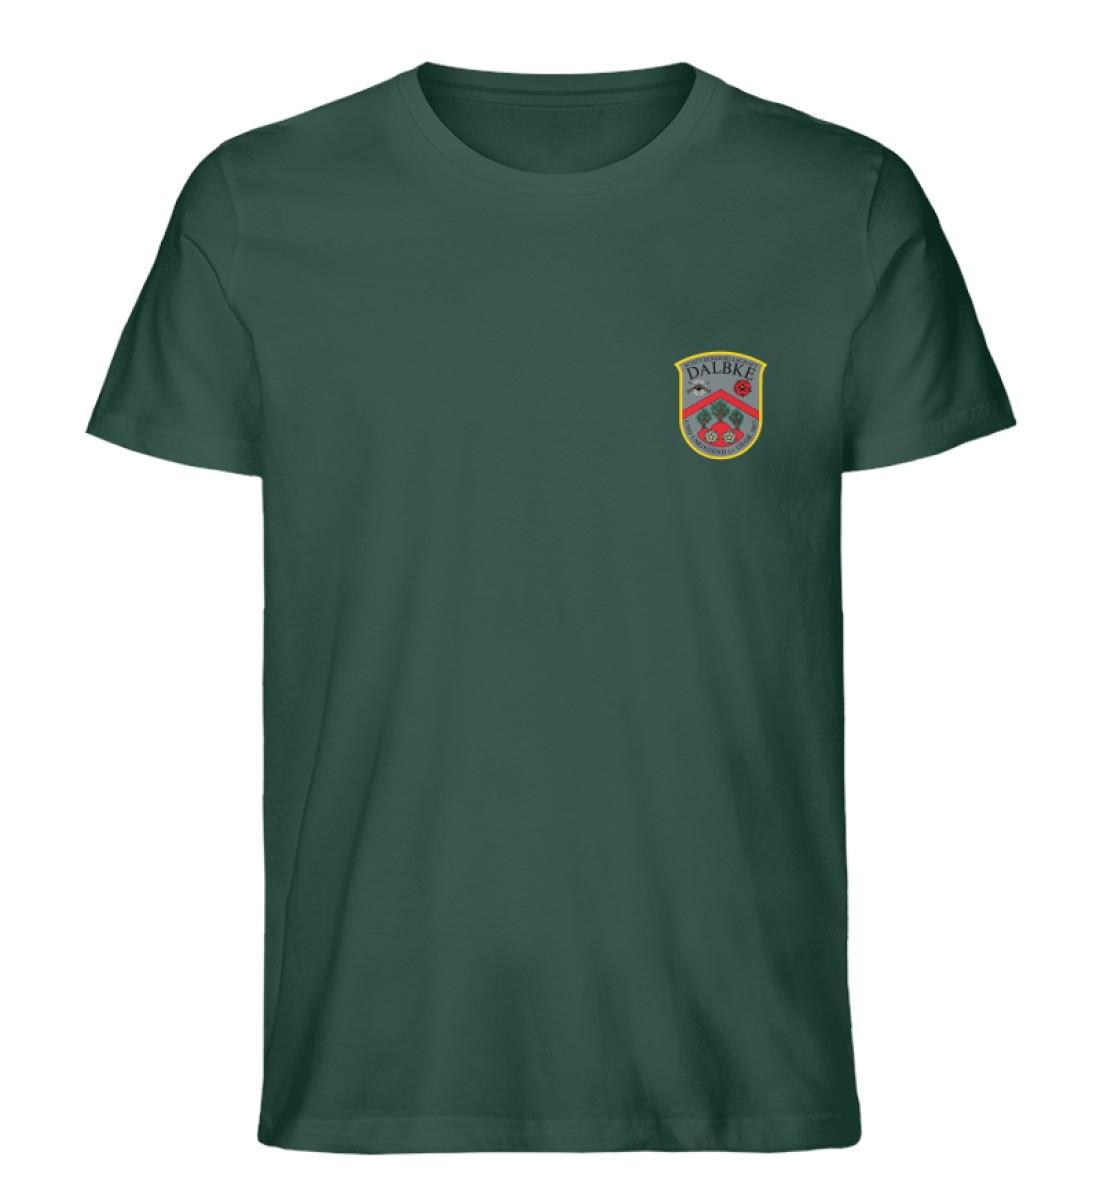 SG Dalbke Wappen - Herren Premium Organic Shirt-7112